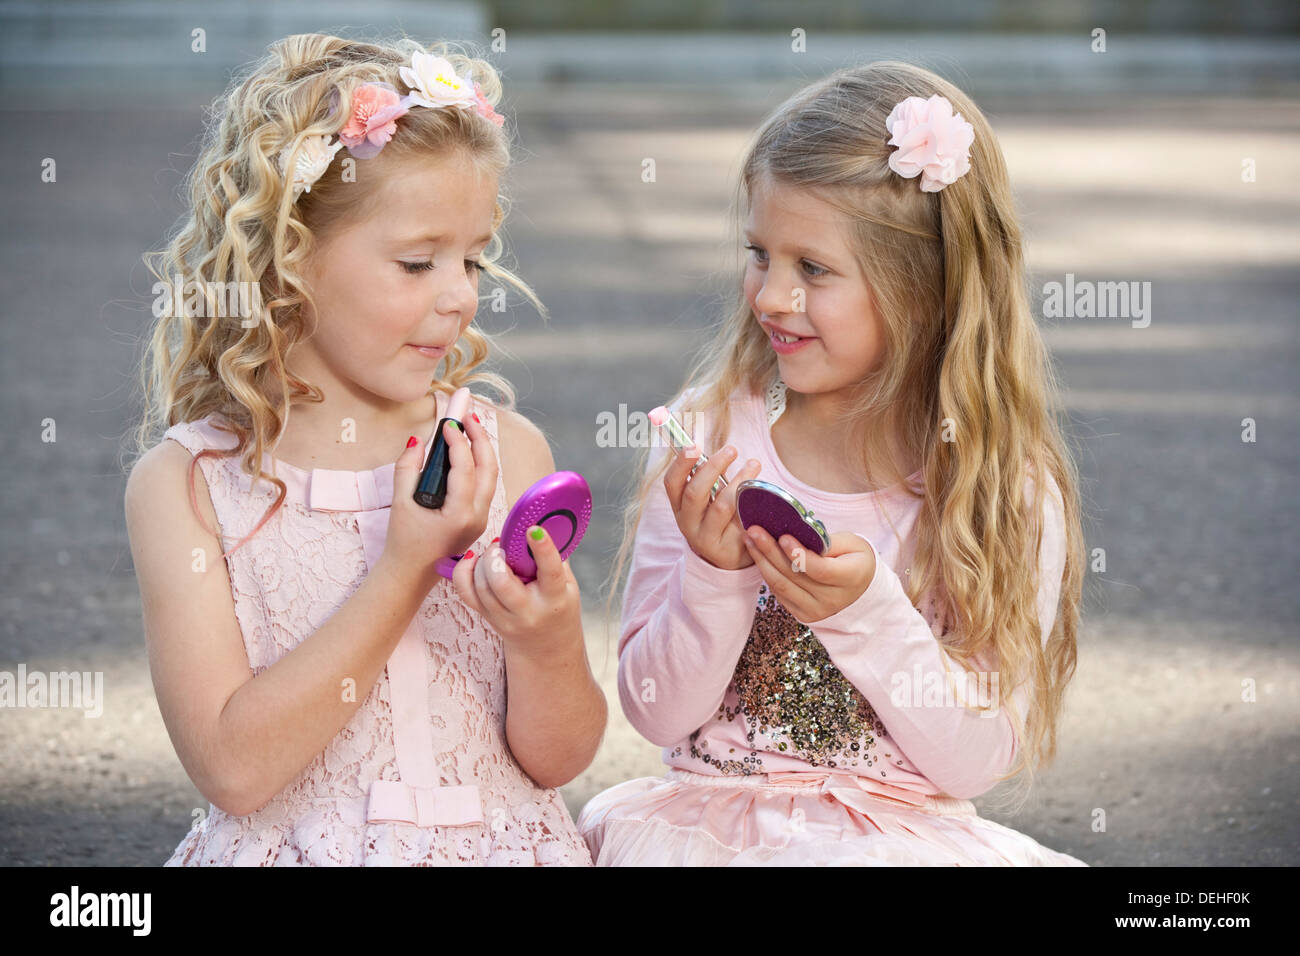 Zwei junge preteen Mädchen tragen rosa und putting make-up auf. Stockfoto